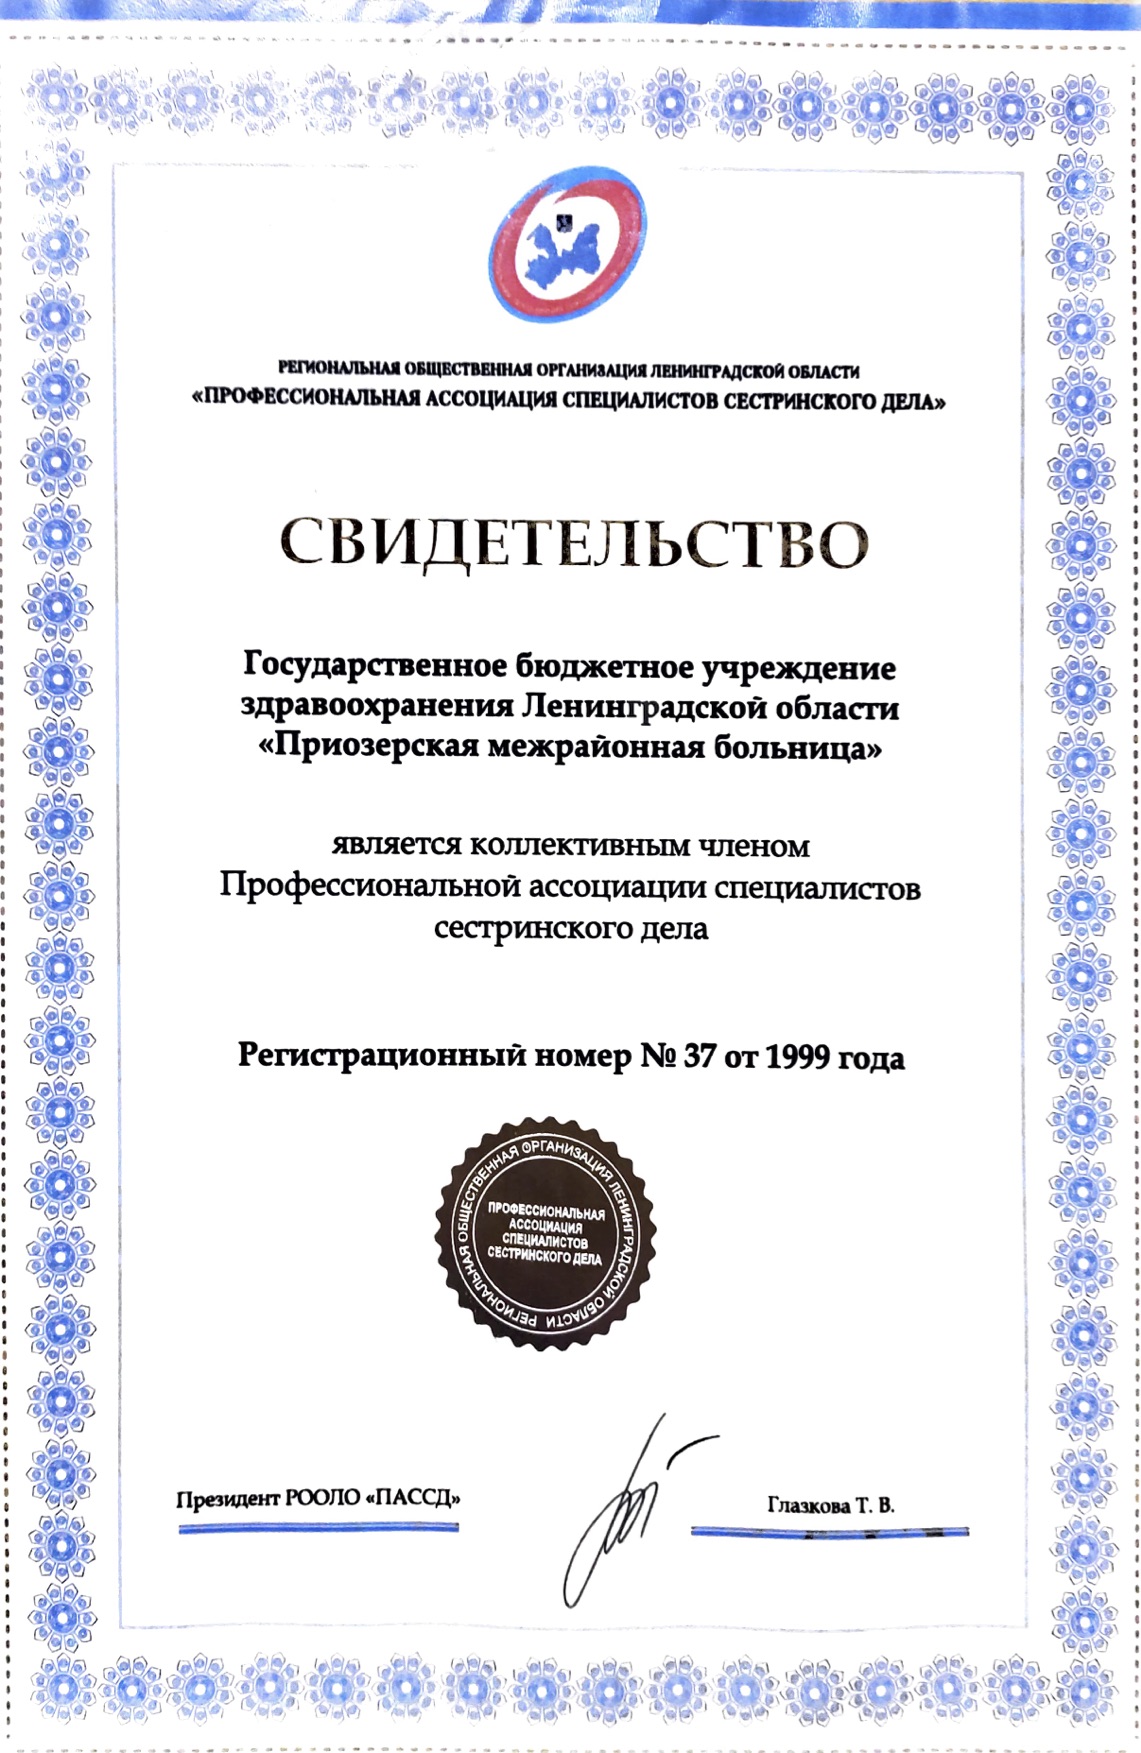 ГБУЗ ЛО "Приозерская МБ": сертификат